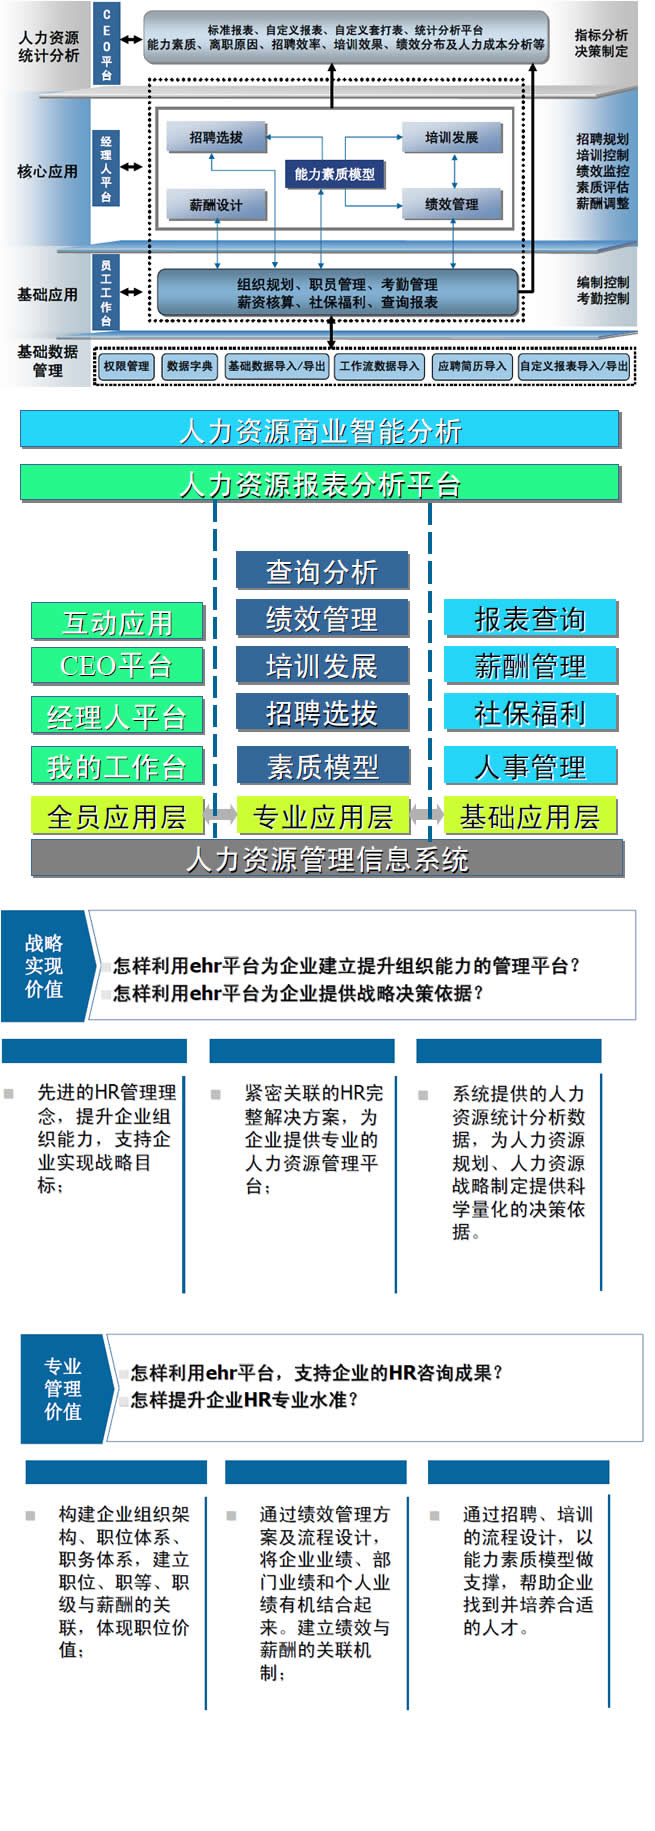 上海金蝶软件-人力资源管理